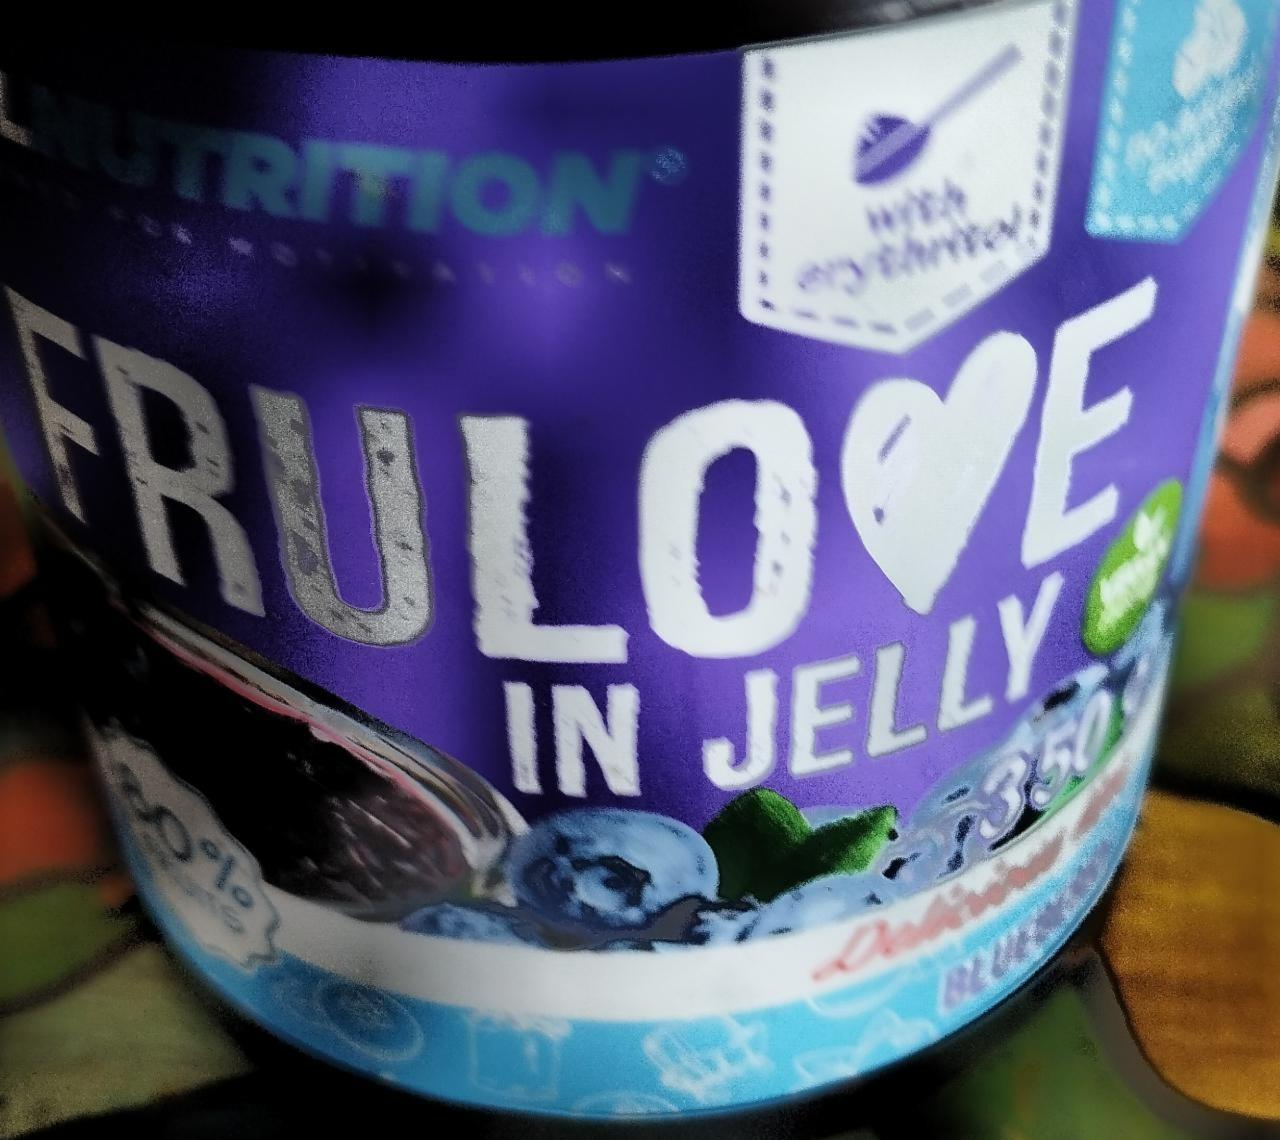 Fotografie - Frulove in jelly Blueberry Allnutrition